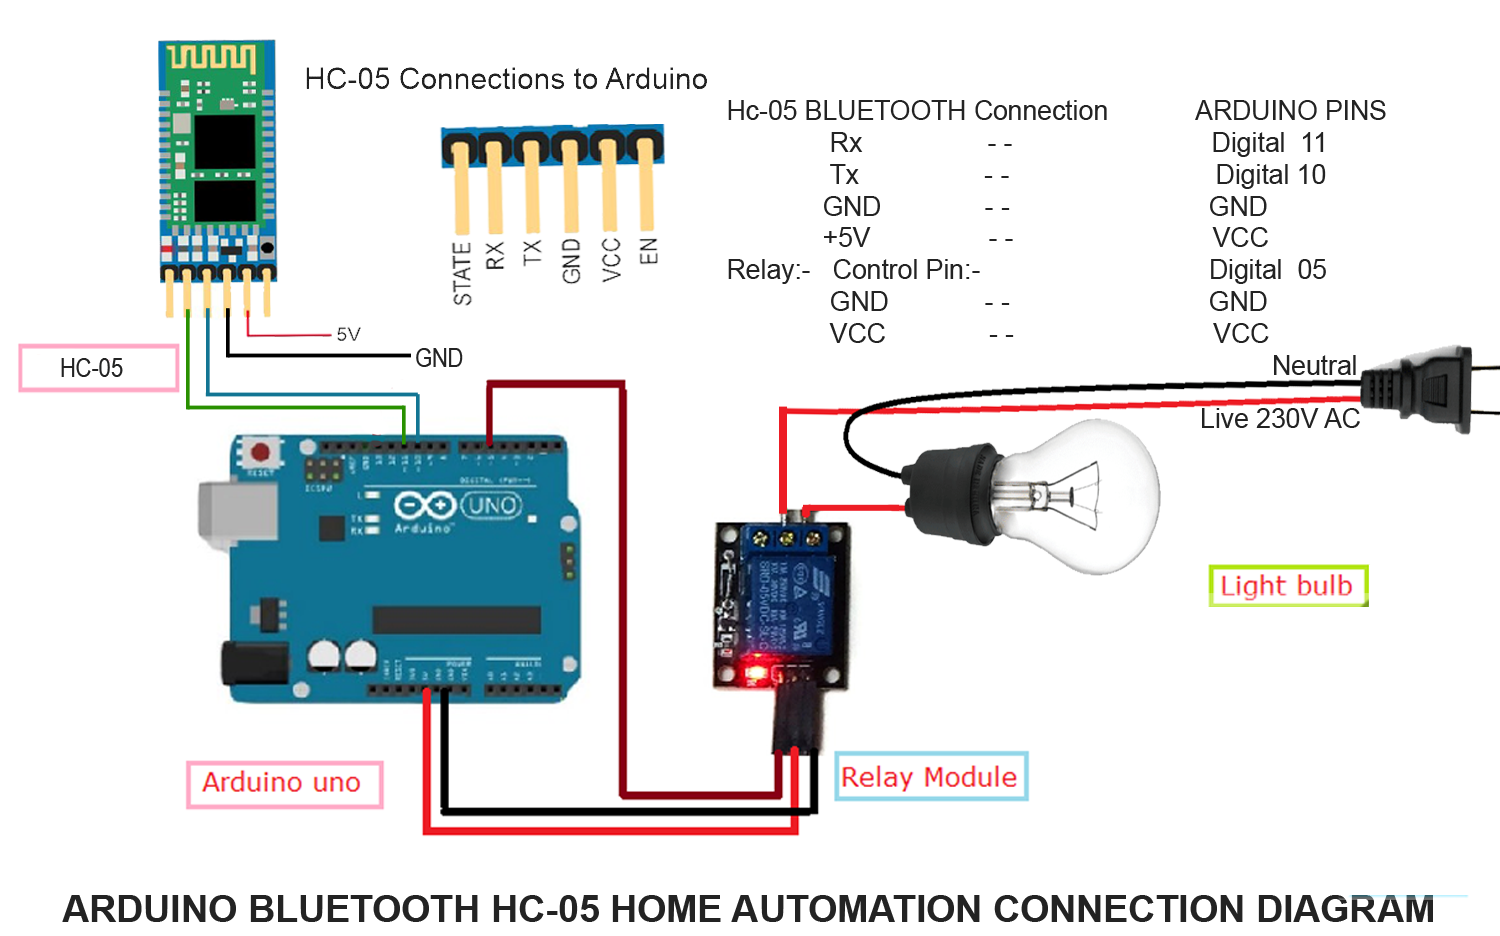 Соединение через блютуз. Схема подключения блютуз модуля для ардуино уно. Bluetooth модуль ардуино HC-05. Схема подключение блютуз модуля HC-06 ардуино. Схема подключения HC-05 К ардуино.